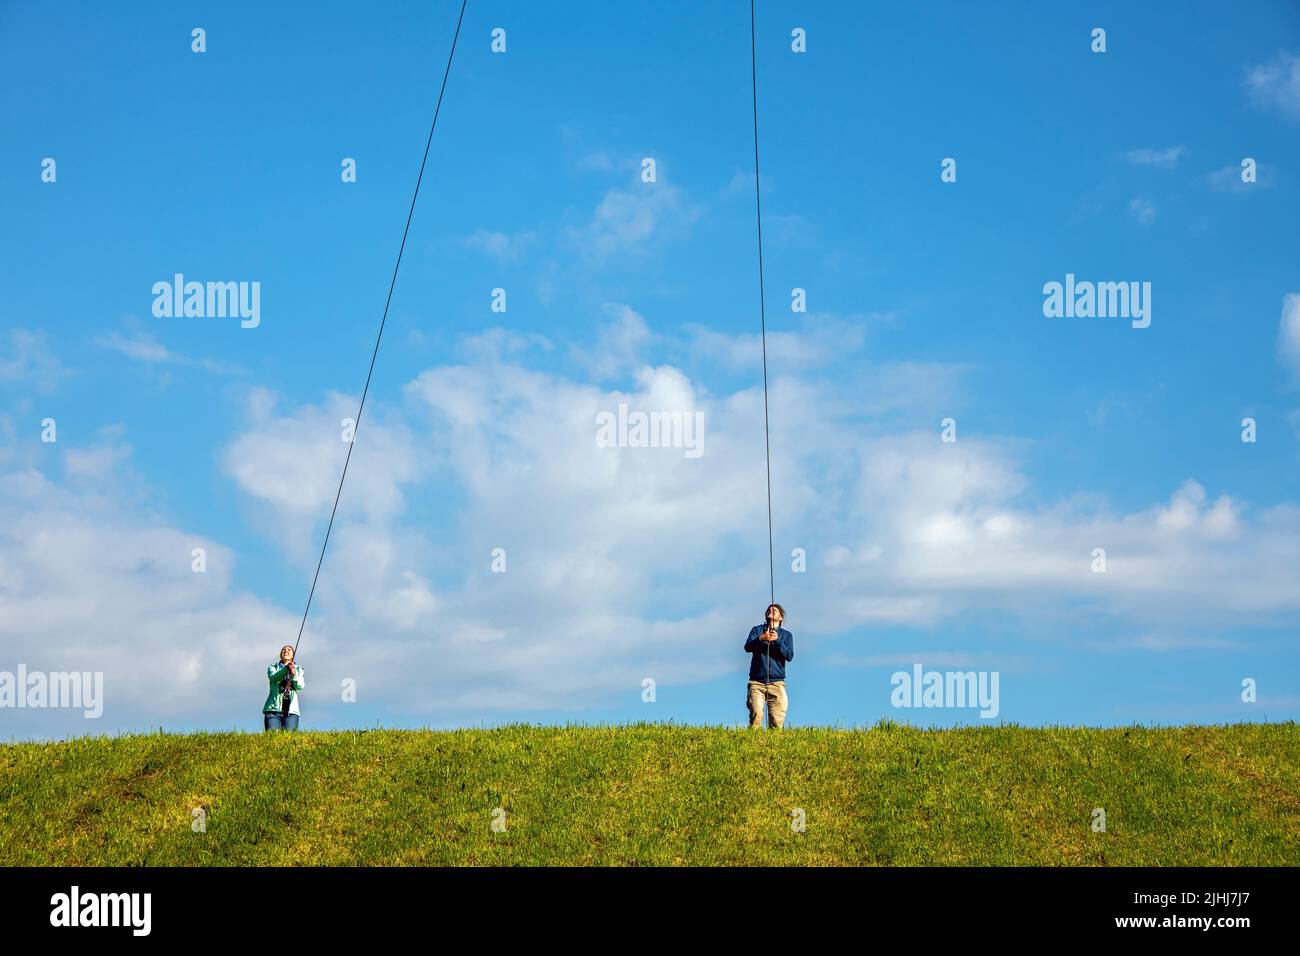 Persone che fanno sforzi per trascinare corde per tenere qualcosa dal cielo alla terra Foto Stock